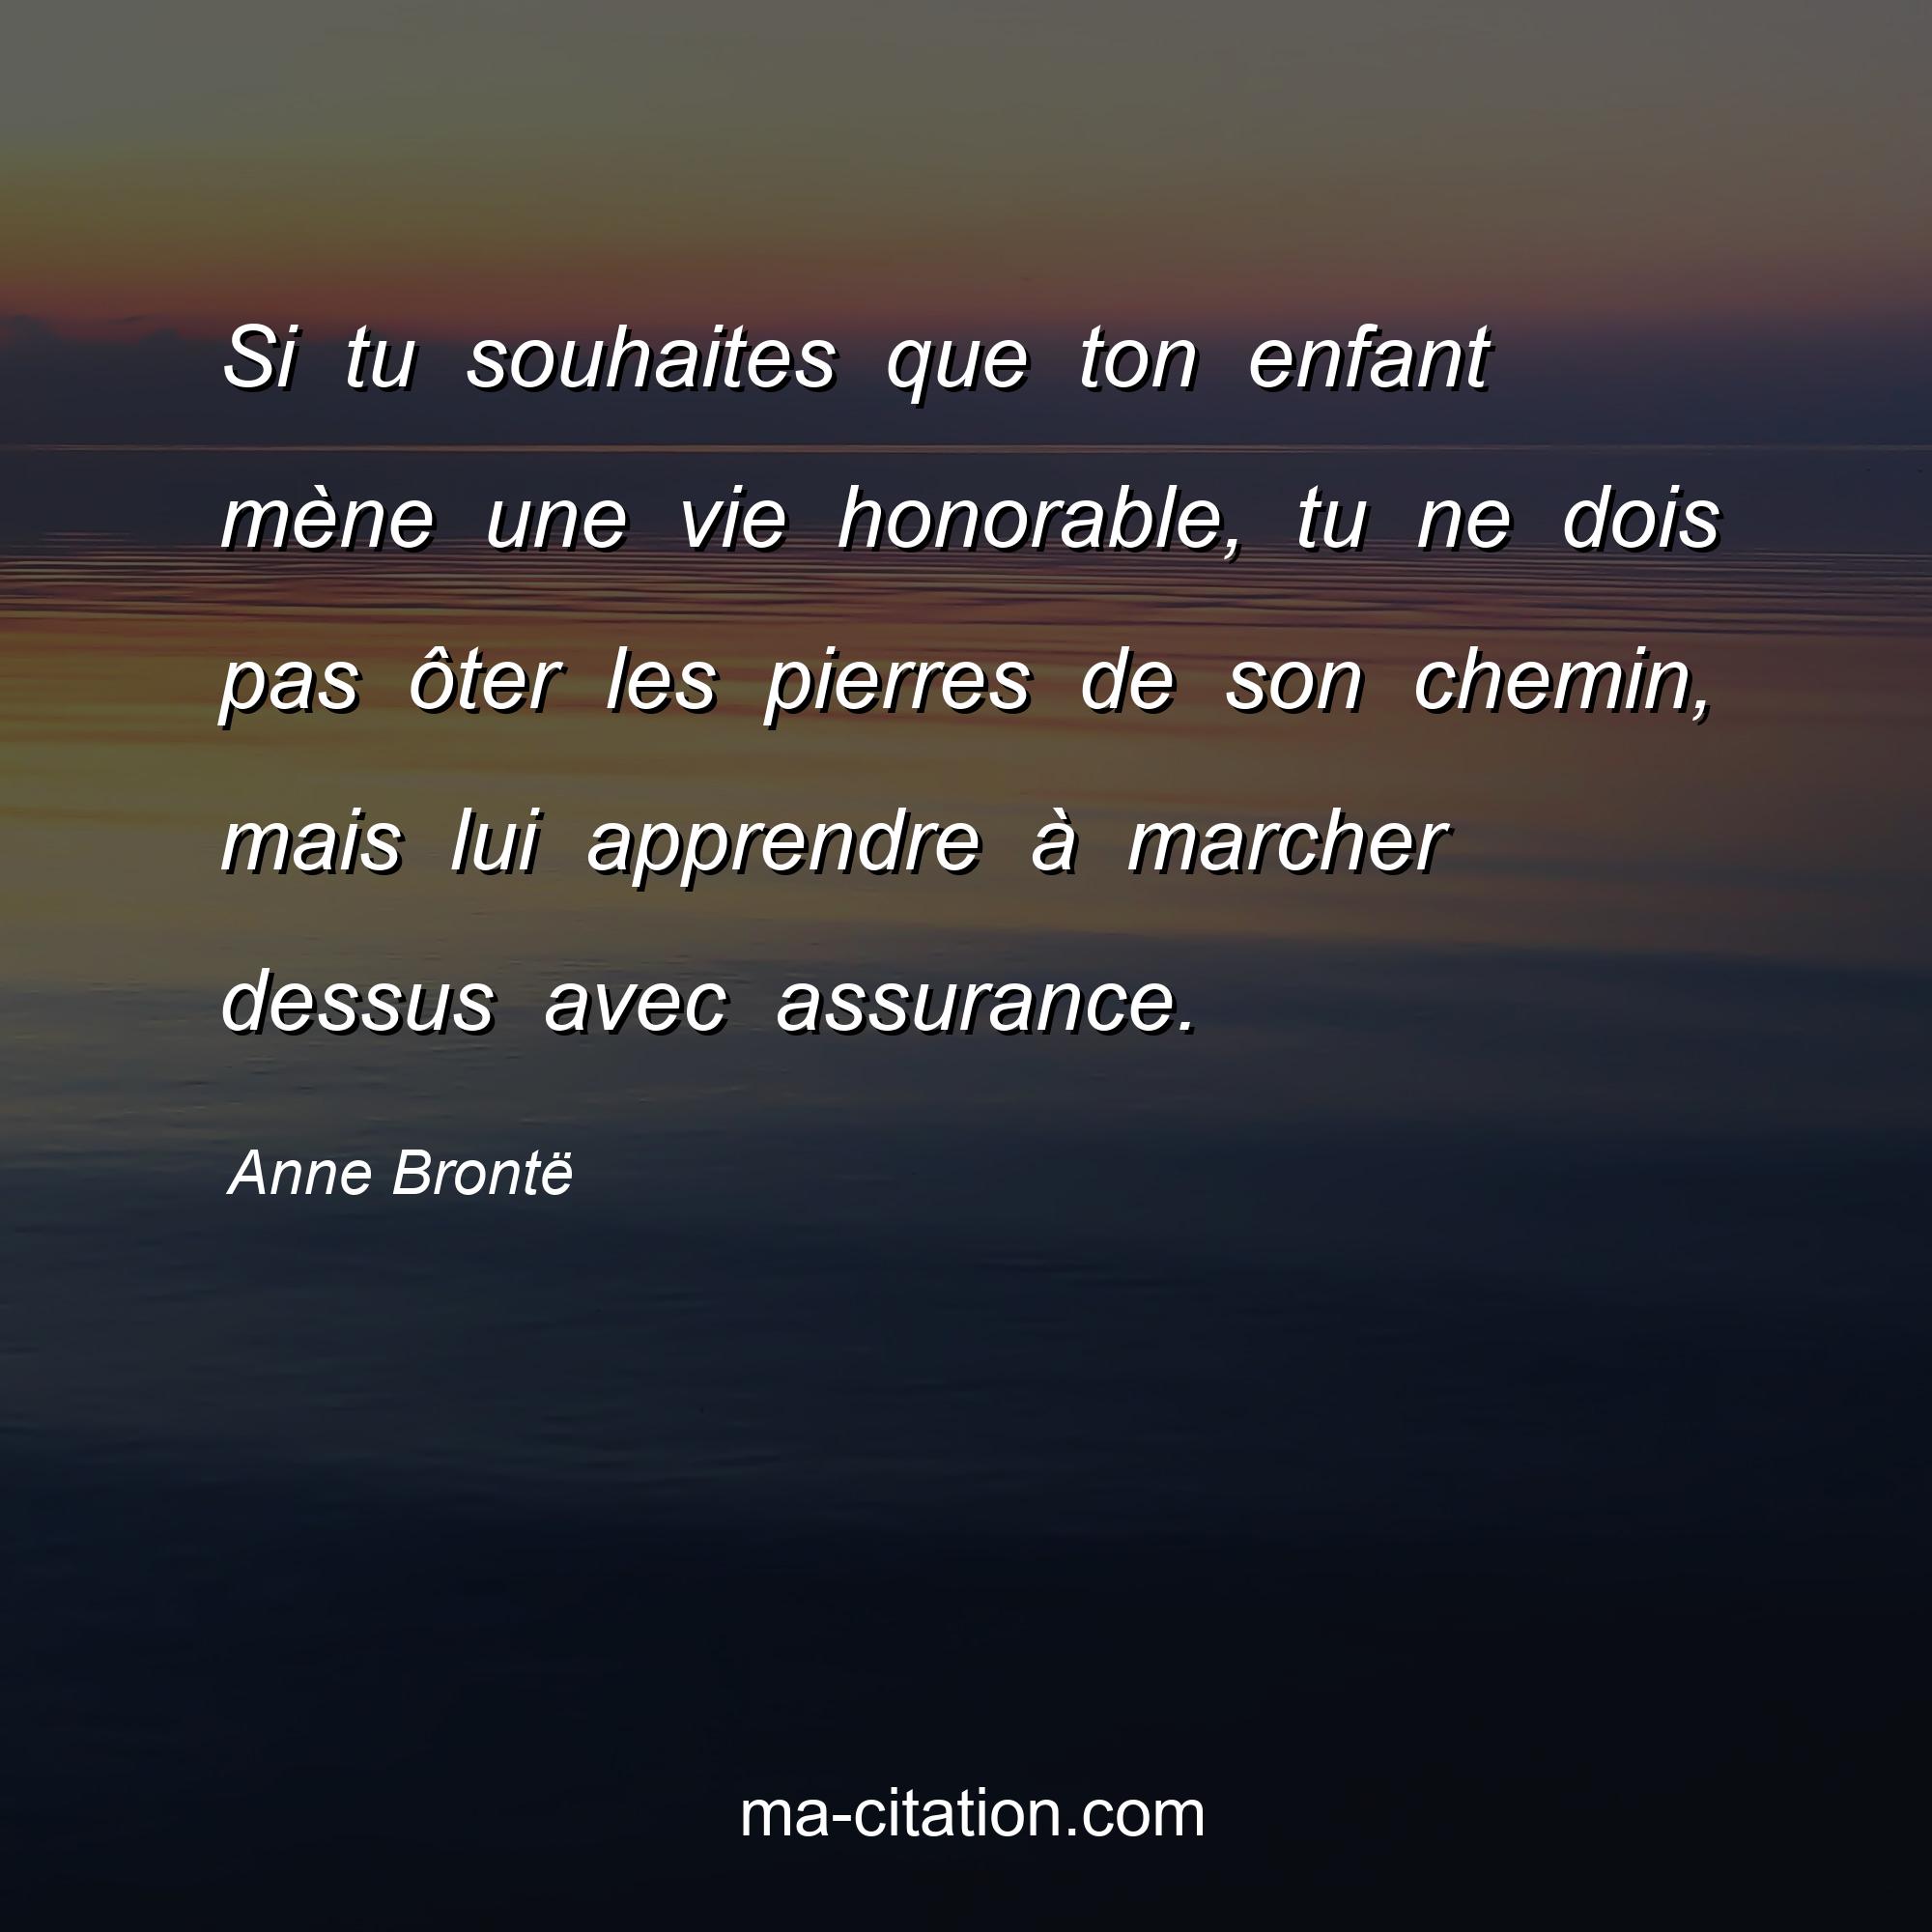 Anne Brontë : Si tu souhaites que ton enfant mène une vie honorable, tu ne dois pas ôter les pierres de son chemin, mais lui apprendre à marcher dessus avec assurance.